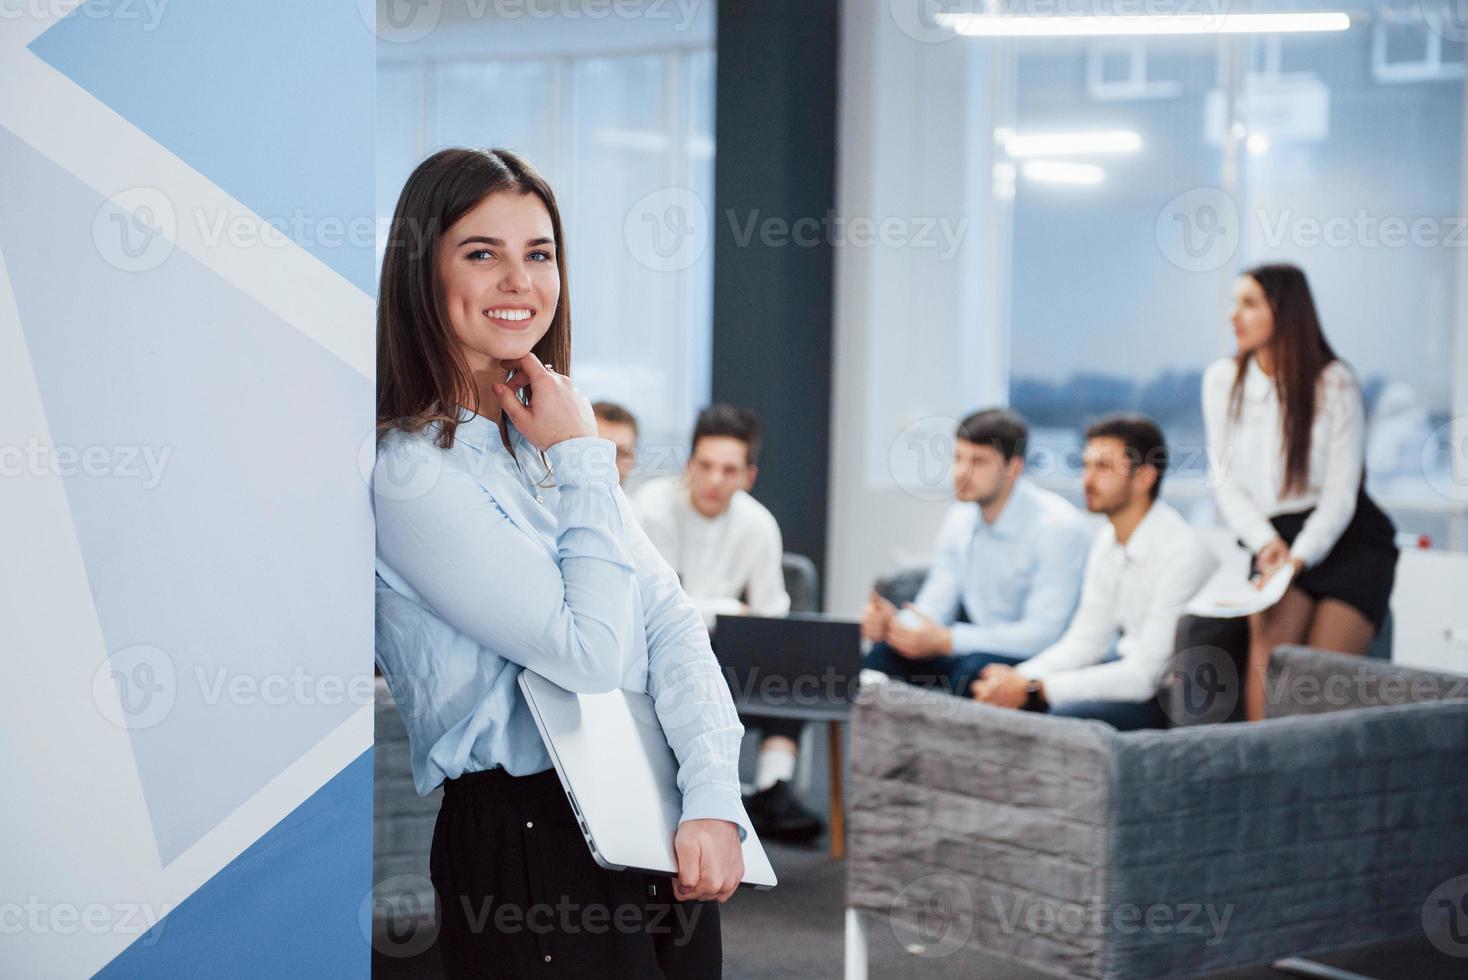 contando com a parede. retrato de uma jovem no escritório com funcionários no fundo foto